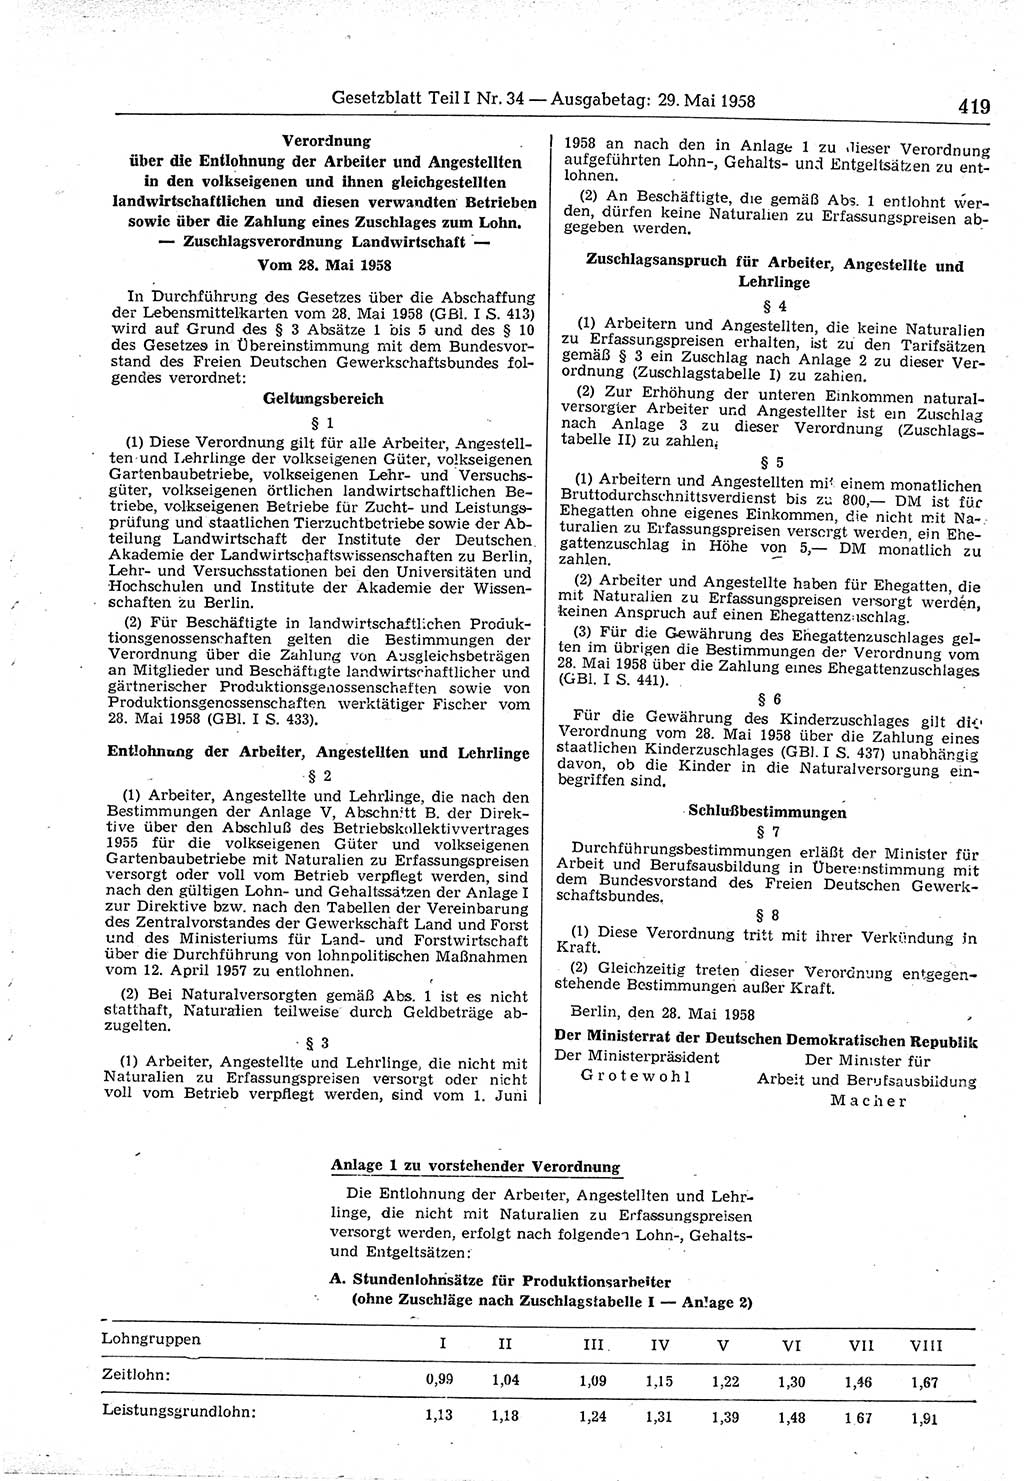 Gesetzblatt (GBl.) der Deutschen Demokratischen Republik (DDR) Teil Ⅰ 1958, Seite 419 (GBl. DDR Ⅰ 1958, S. 419)